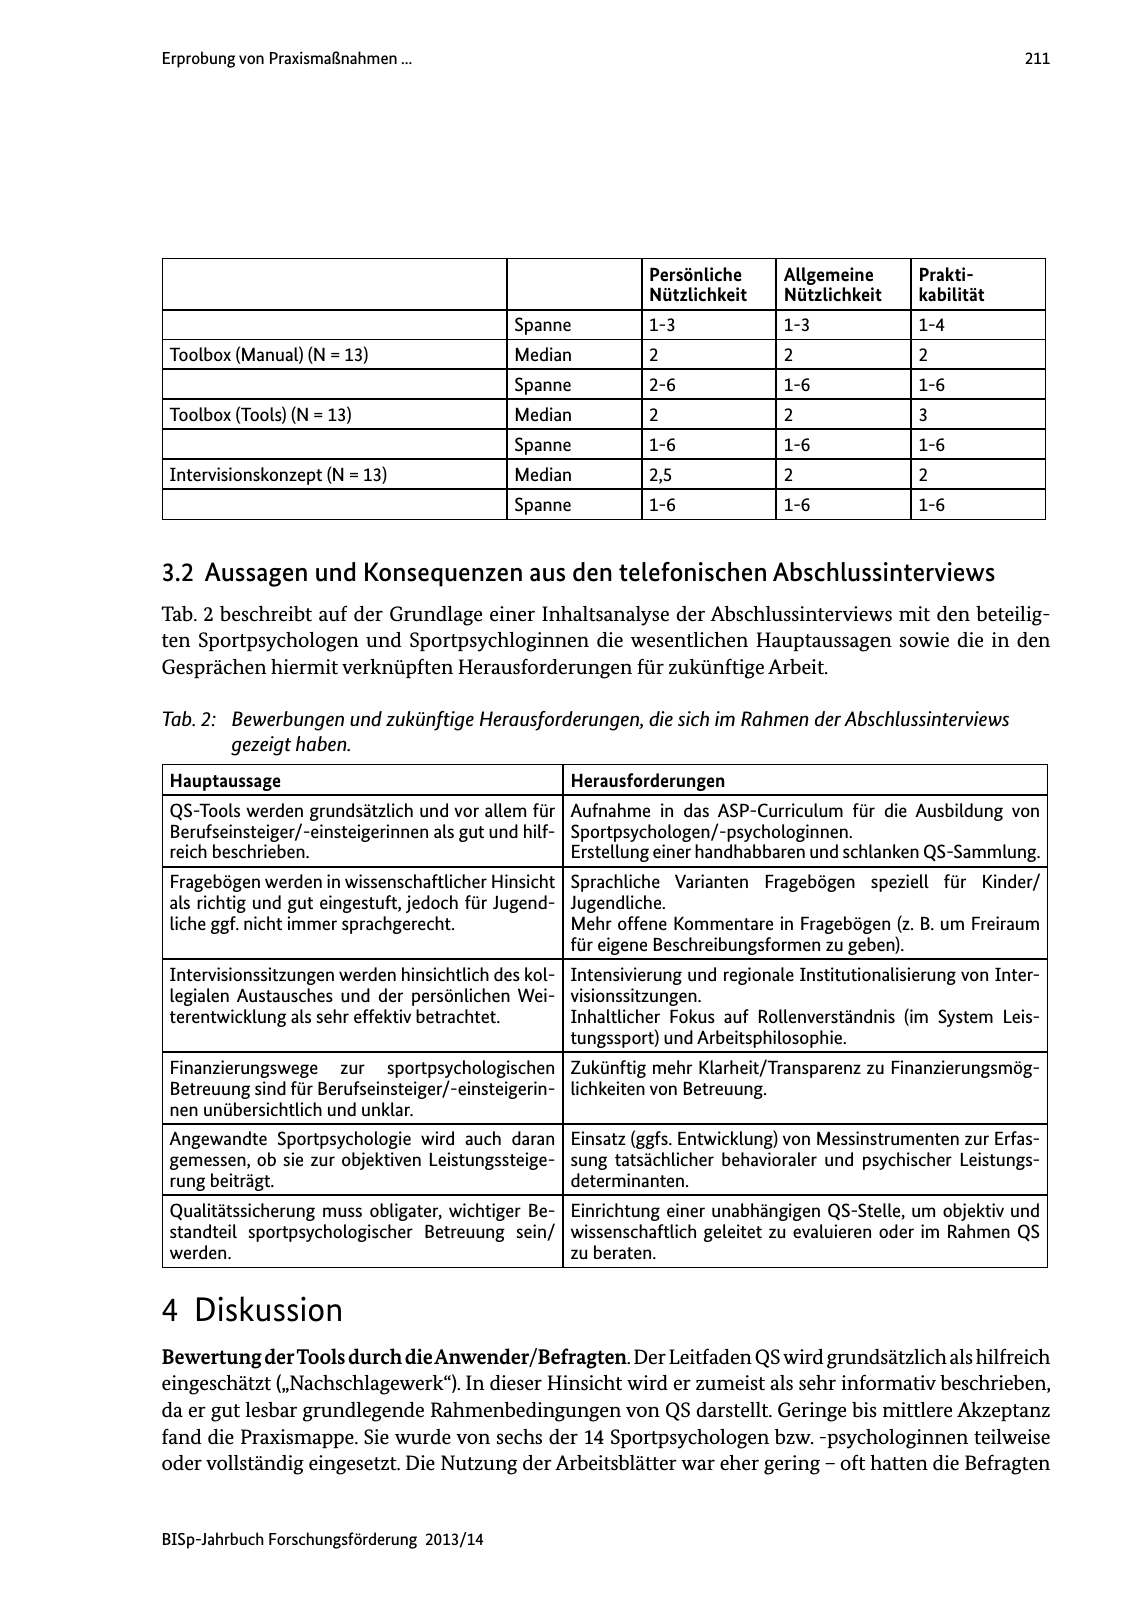 Vorschau BISp-Jahrbuch Forschungsförderung 2013/14 Seite 212